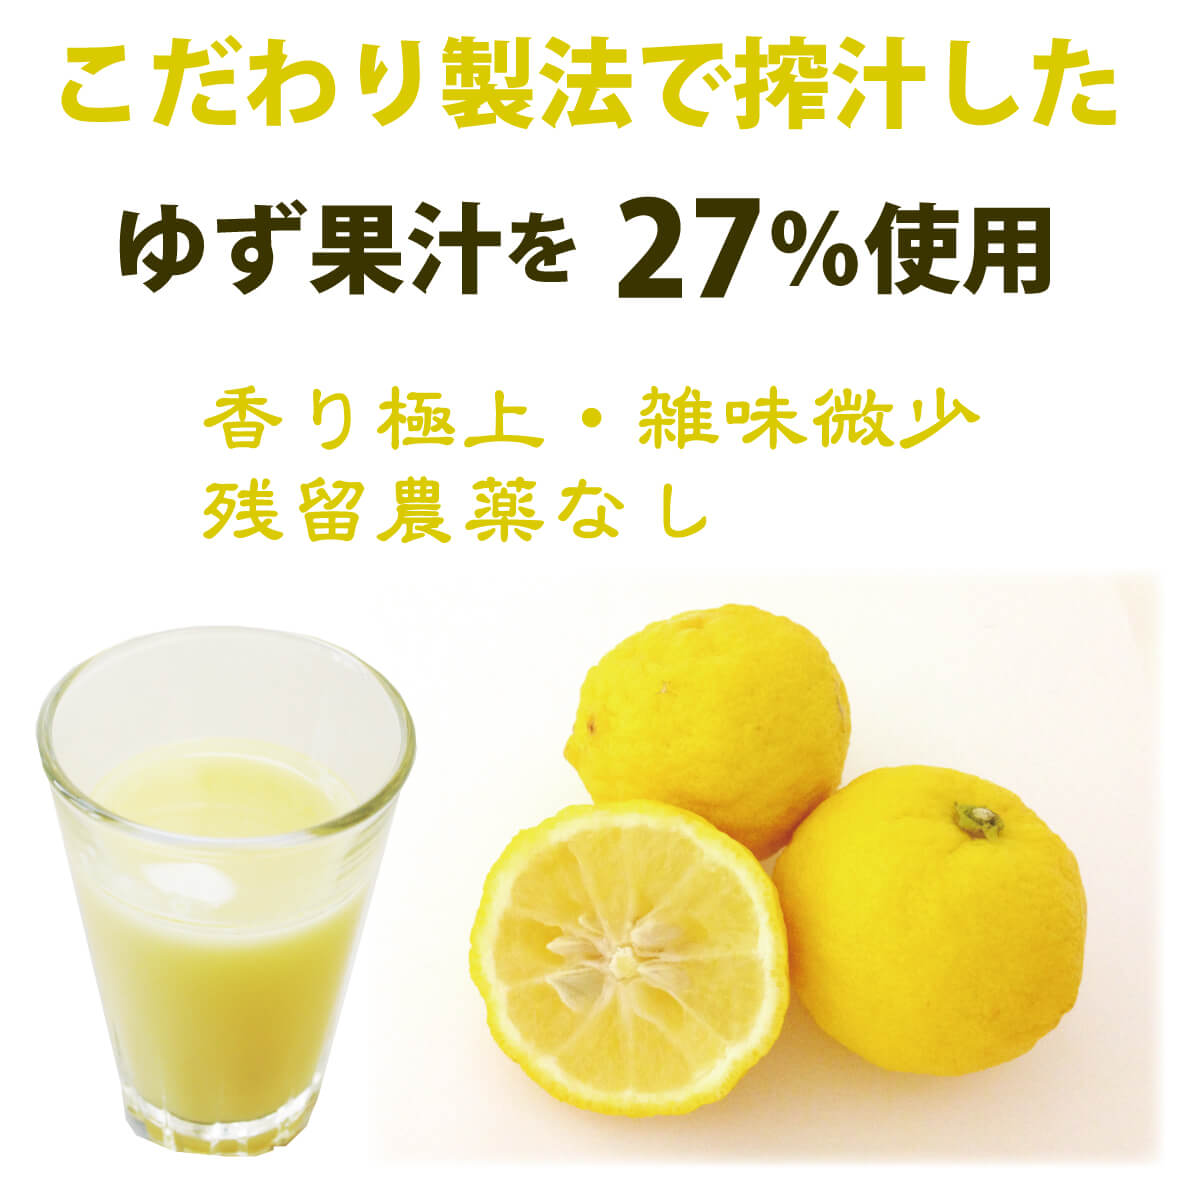 こだわり製法で搾汁した山口県産ゆず果汁を27％使用。香り極上・雑味微少・残留農薬なし